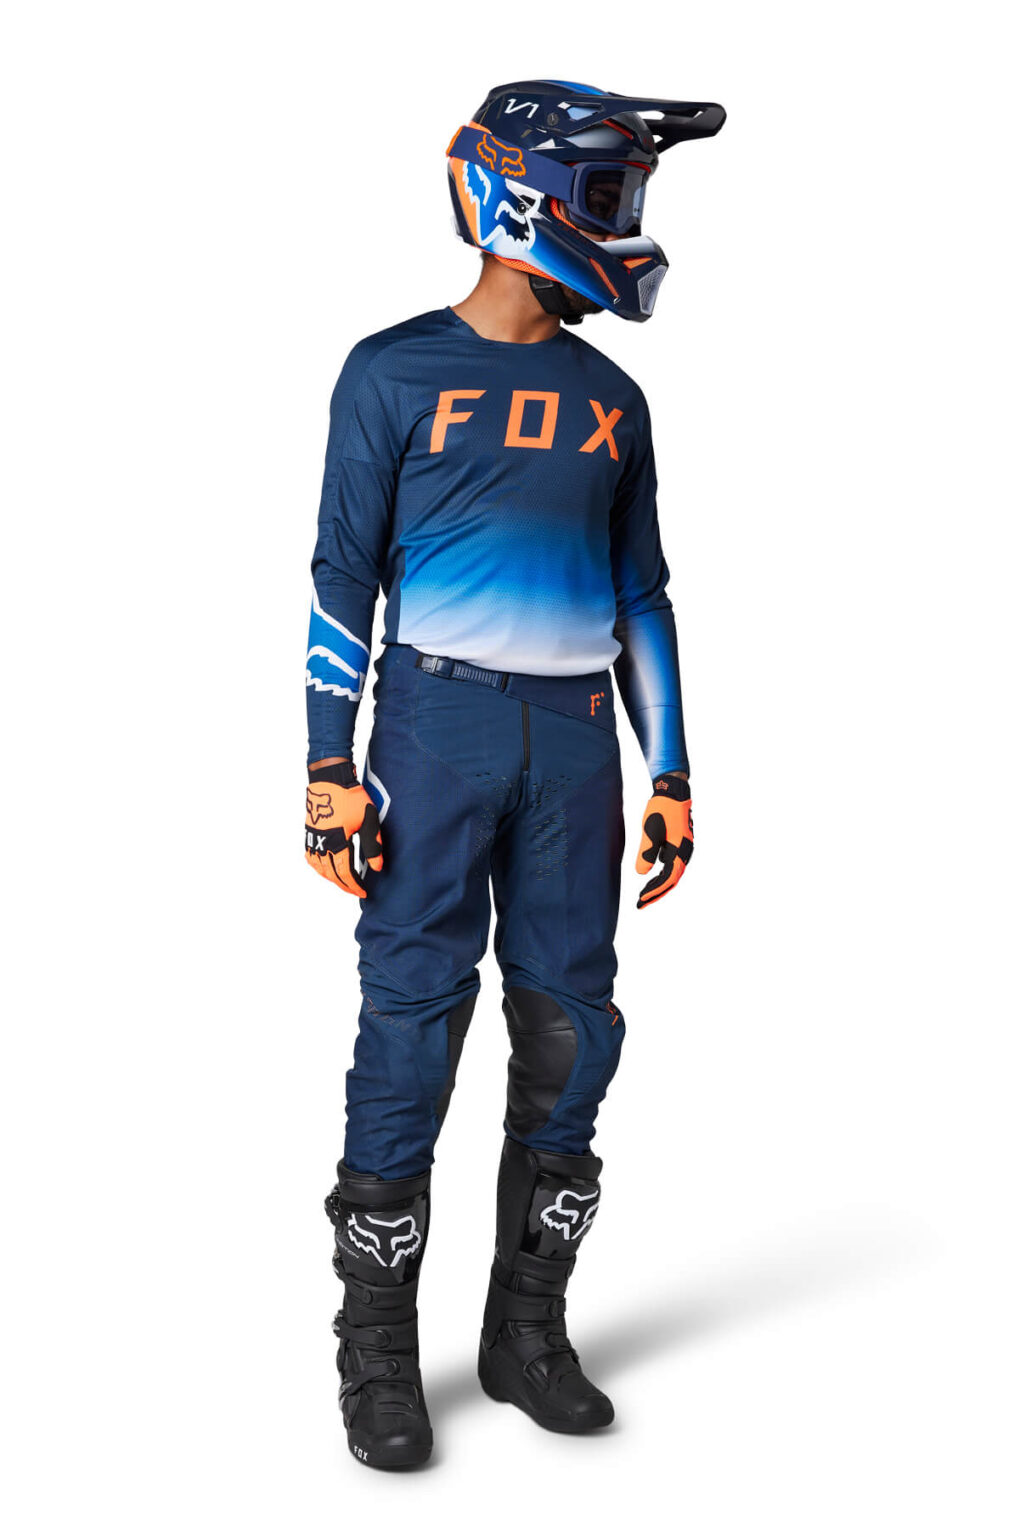 חליפת פוקס - FOX 360 כל הצבעים